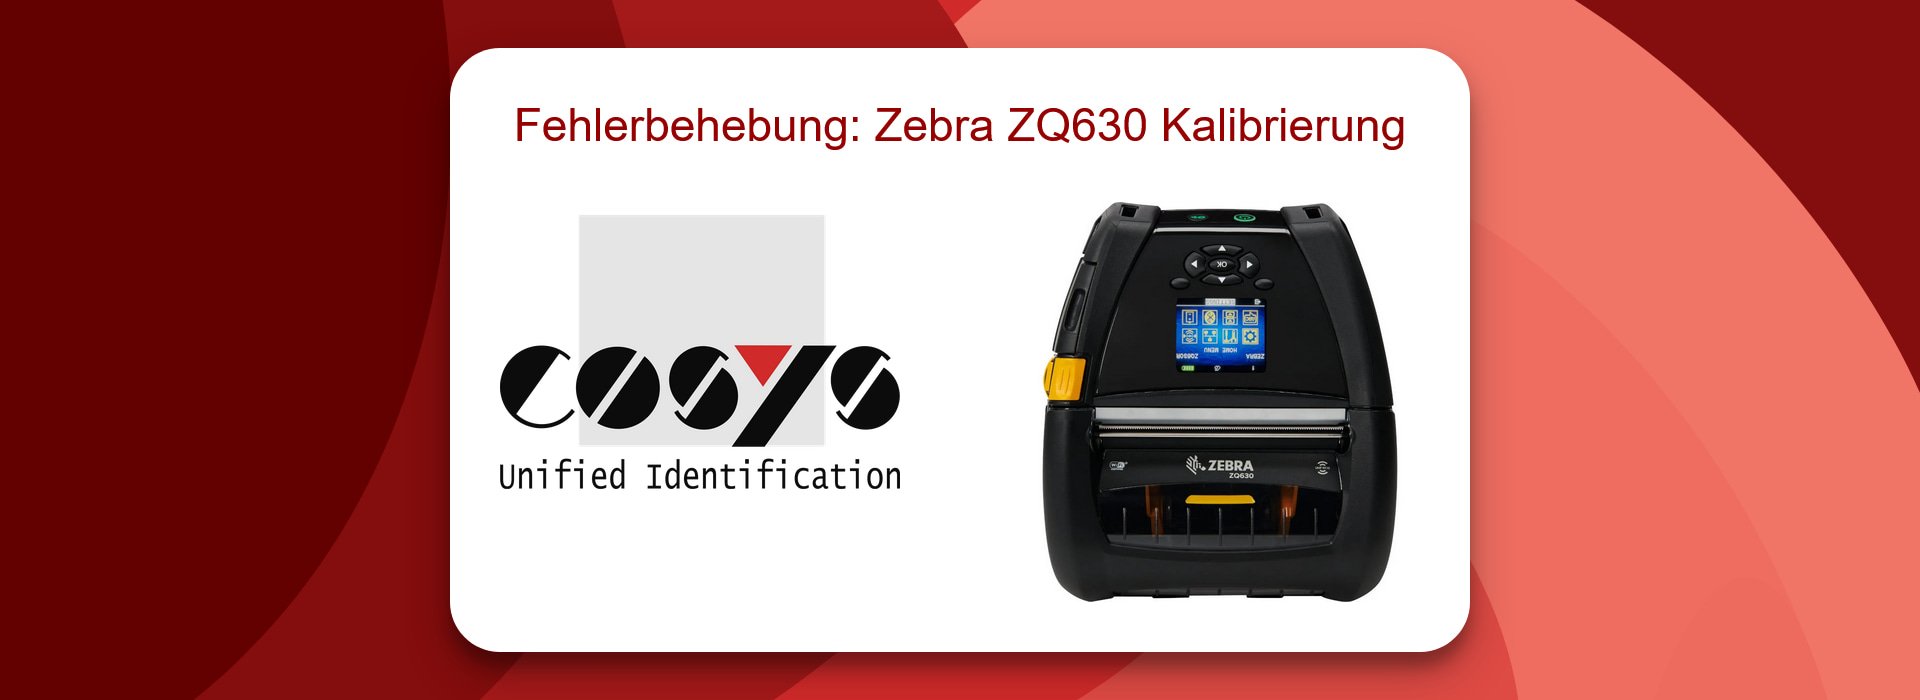 Fehlerbehebung: Zebra ZQ630 Kalibrierung